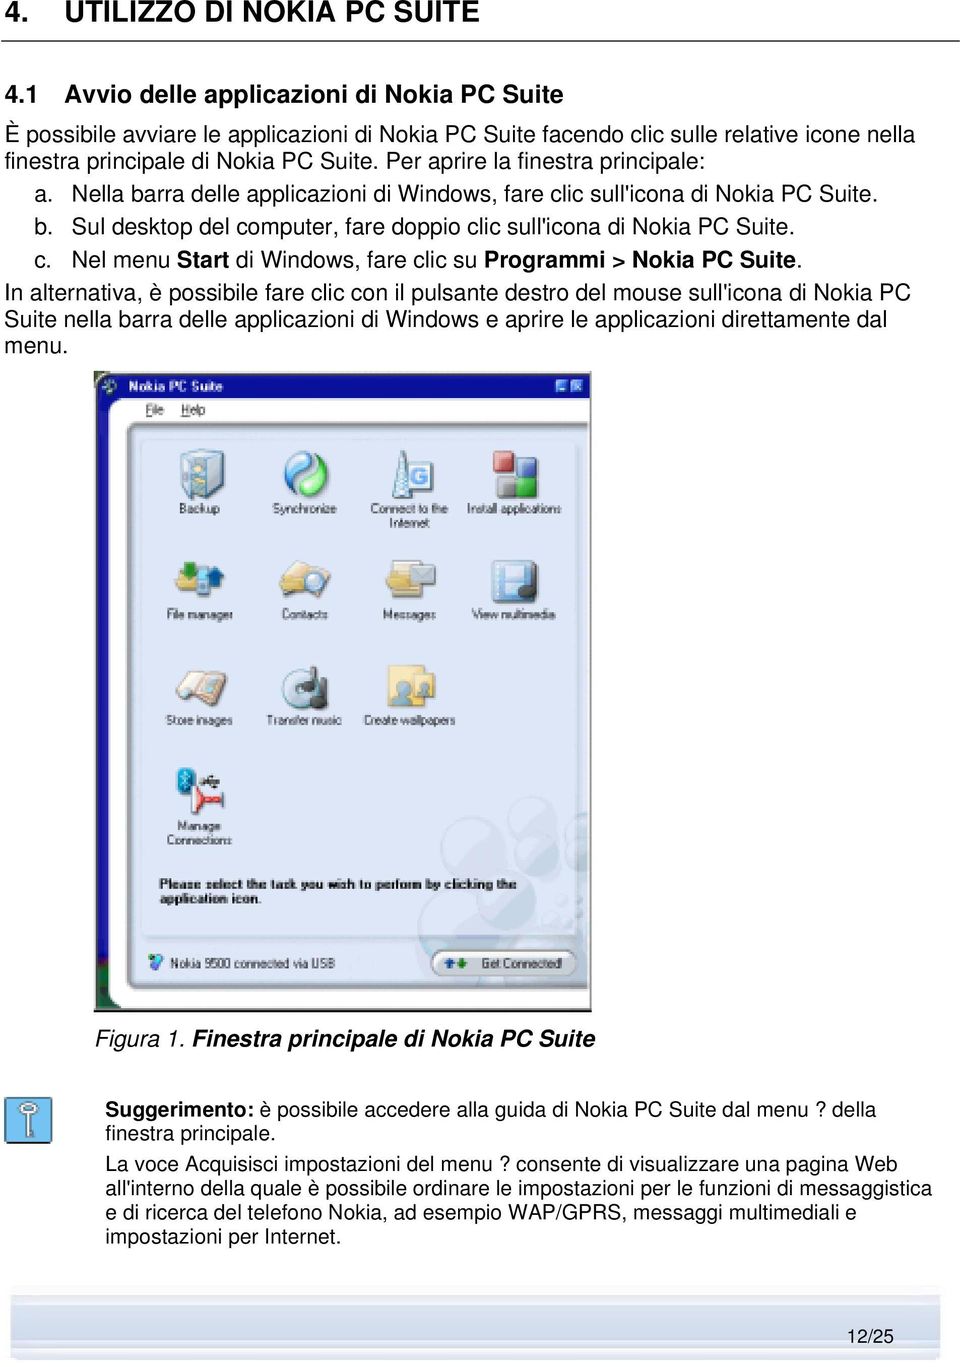 Per aprire la finestra principale: a. Nella barra delle applicazioni di Windows, fare clic sull'icona di Nokia PC Suite. b. Sul desktop del computer, fare doppio clic sull'icona di Nokia PC Suite. c. Nel menu Start di Windows, fare clic su Programmi > Nokia PC Suite.